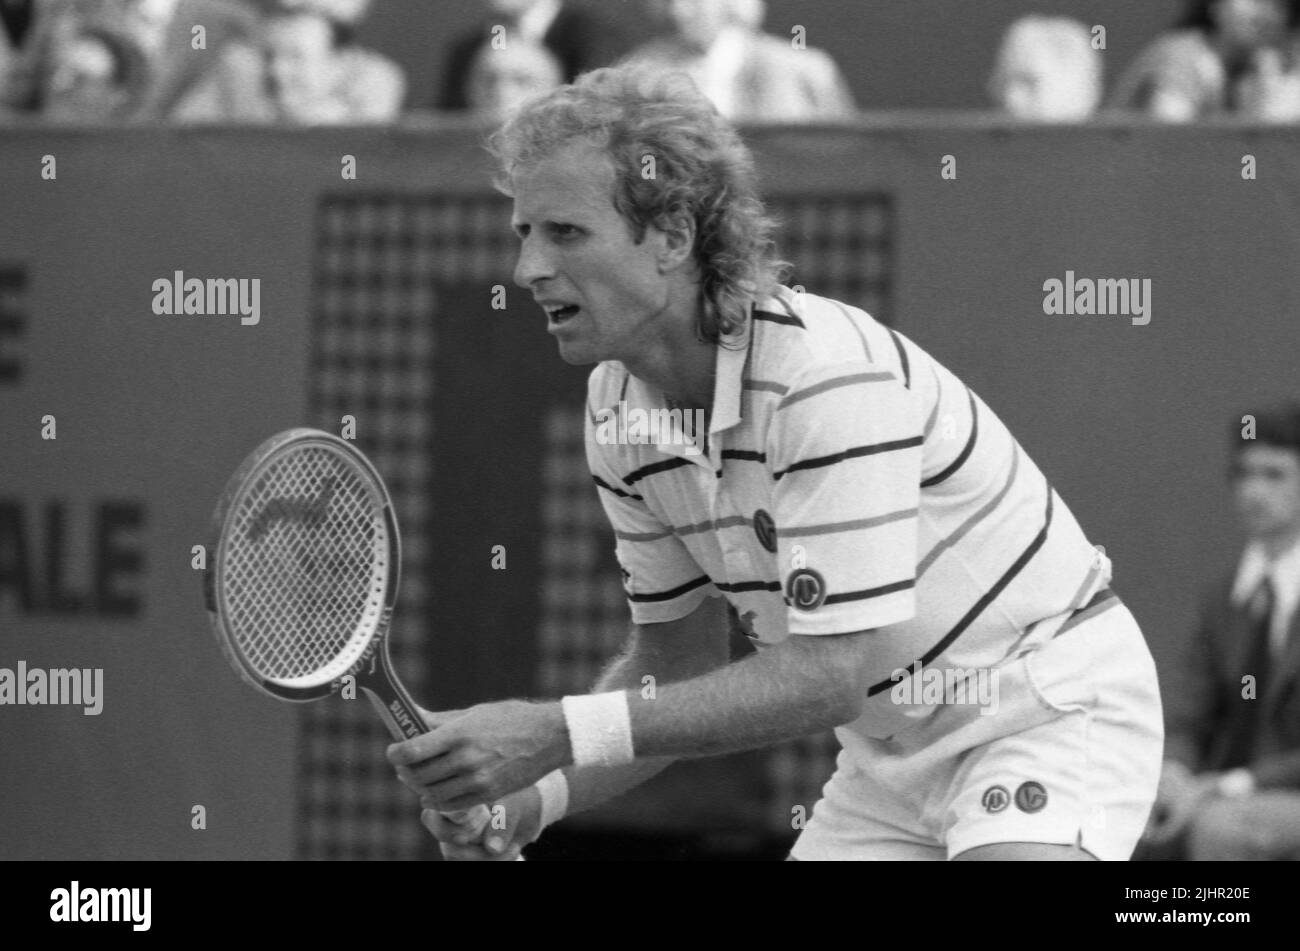 Le joueur de tennis américain Vitas Gerulaitis, participant aux quarts de finale hommes de l'Open de France (vs Swedish Mats Wilander). Paris, stade Roland-Garros, juin 1982 Banque D'Images